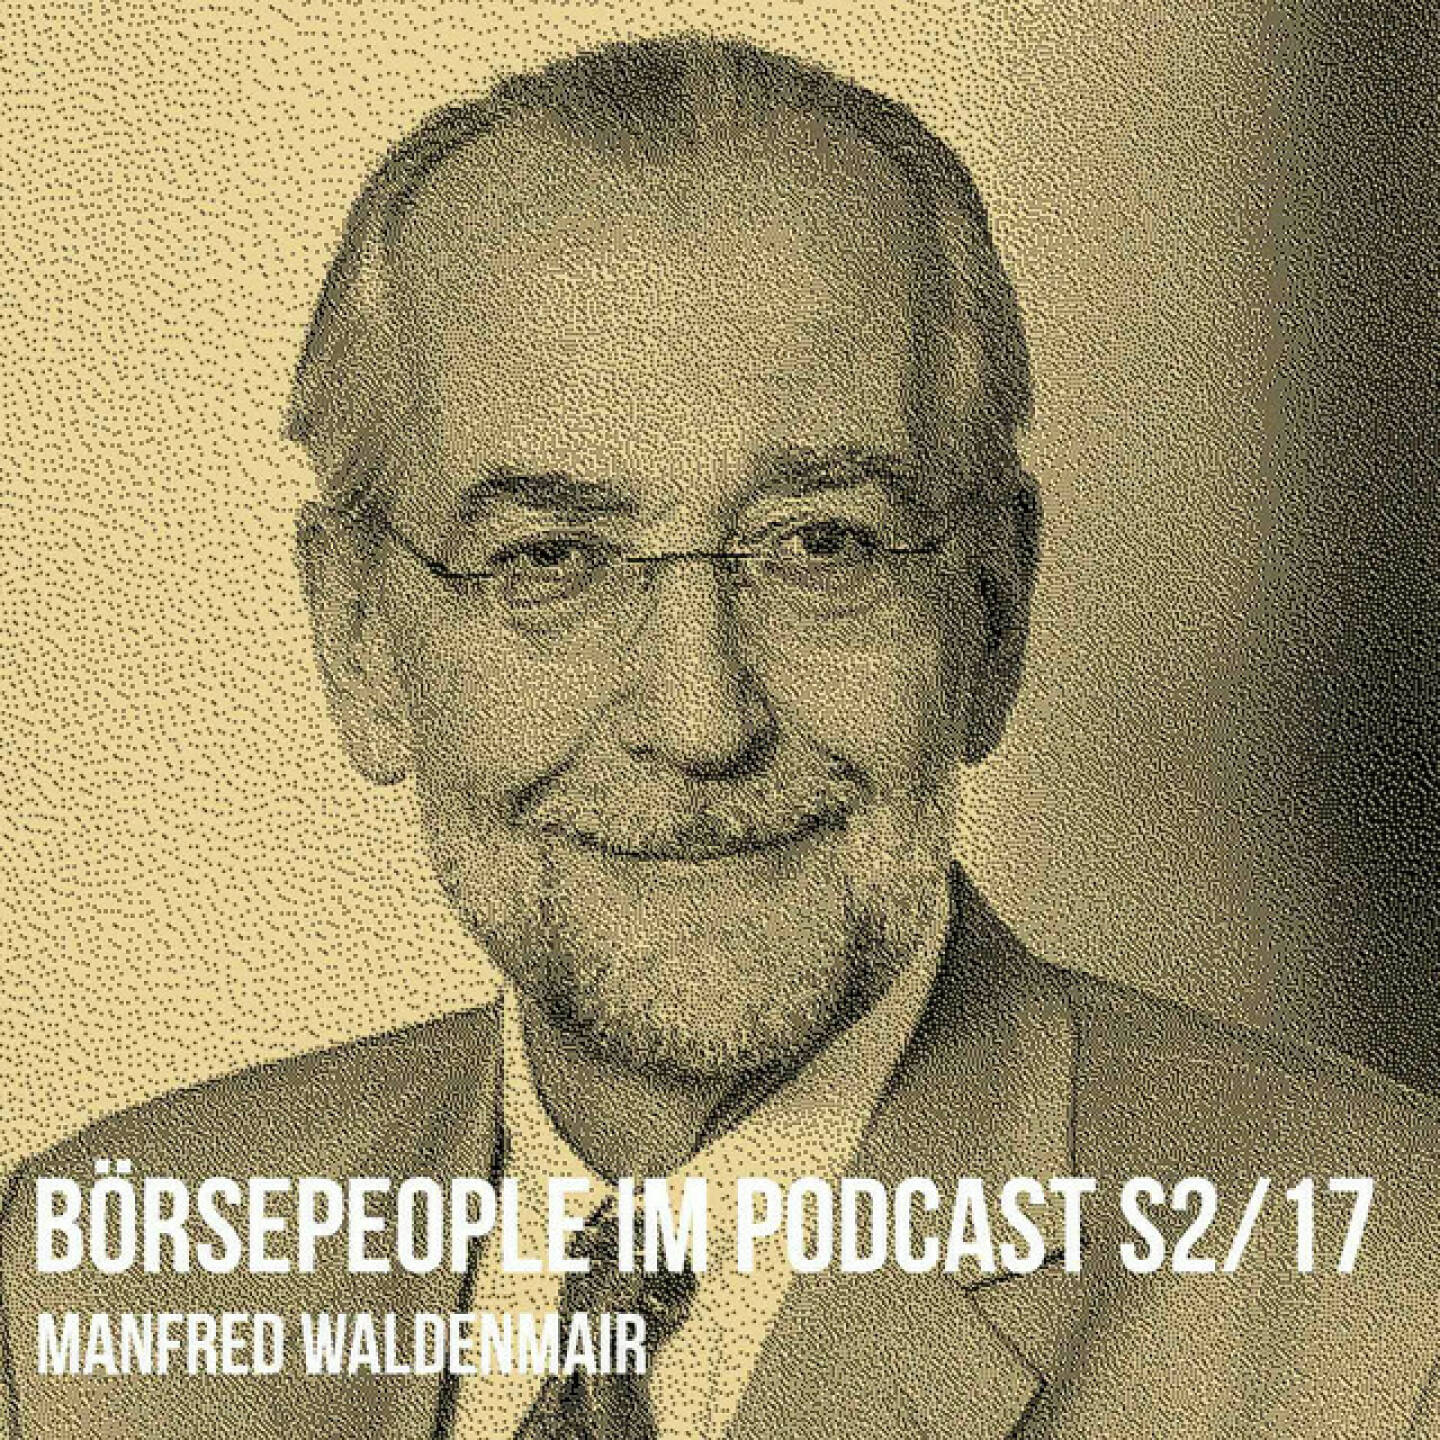 https://open.spotify.com/episode/0xwZEwQc7XDqWXsBTcYJGl
Börsepeople im Podcast S2/17: Manfred Waldenmair - <p>Die Geschichte von Manfred Waldenmair ist auch eine Geschichte der Geschäftsberichte in Österreich. Seit 1984 produziert er mit seiner Agentur bepublic (und Vorgängergesellschaften) die physischen, später auch digitalen und hybriden. jährlichen Visitenkarten zahlreicher Unternehmen. Wir sprechen über den Geschäftsbericht im Wandel der Zeit, über Sprachen, Nachhaltigkeit und die teuflische Last Mile, lassen aber auch Literatur (Waldenmair war in jungen Jahren Herausgeber einer Literaturzeitschrift) und Musik (Förderer der Wiener Staatsoper) nicht unerwähnt.</p><br/><p><a href=https://www.bepublic.at rel=nofollow>https://www.bepublic.at</a></p><br/><ol><li>GB 1984, lange vor dem Börsegang der Erste Öst. SparCasse Bank: <a href=https://boerse-social.com/companyreports/show/erste_bank_geschaftsbericht_1984 rel=nofollow>https://boerse-social.com/companyreports/show/erste_bank_geschaftsbericht_1984</a></li></ol><br/><p>About: Die Serie Börsepeople findet im Rahmen von http://www.christian-drastil.com/podcast sta tt. Es handelt sich dabei um typische Personality- und Werdegang-Gespräche. Die Season 2 umfasst unter dem Motto „22 Börsepeople“ erneut 22 Podcast-Tal ks, divers zusammengesetzt. Pre senter der Season 2 ist die Baader Bank ( htt ps://www.baaderbank.de ). Der meistgehörte Börsepeople Podcast 2022 per Stichtag 30.11., 23:59 Uhr wird einen Number One Award für 2022 gewinnen (vgl. <a href=https://boerse-social.com/numberone/2021%29- rel=nofollow>https://boerse-social.com/numberone/2021)-</a> Zwischenstand tagesaktuell um 12 Uhr aktualisiert unter http://www.boersenradio.at/people .</p><br/><p>Bewertungen bei Apple (oder auch Spotify) machen mir Freude: <a href=https://podcasts.apple.com/at/podcast/christian-drastil-wiener-börse-sport-musik-und-mehr-my-life/id1484919130 rel=nofollow>https://podcasts.apple.com/at/podcast/christian-drastil-wiener-börse-sport-musik-und-mehr-my-life/id1484919130</a> .</p>